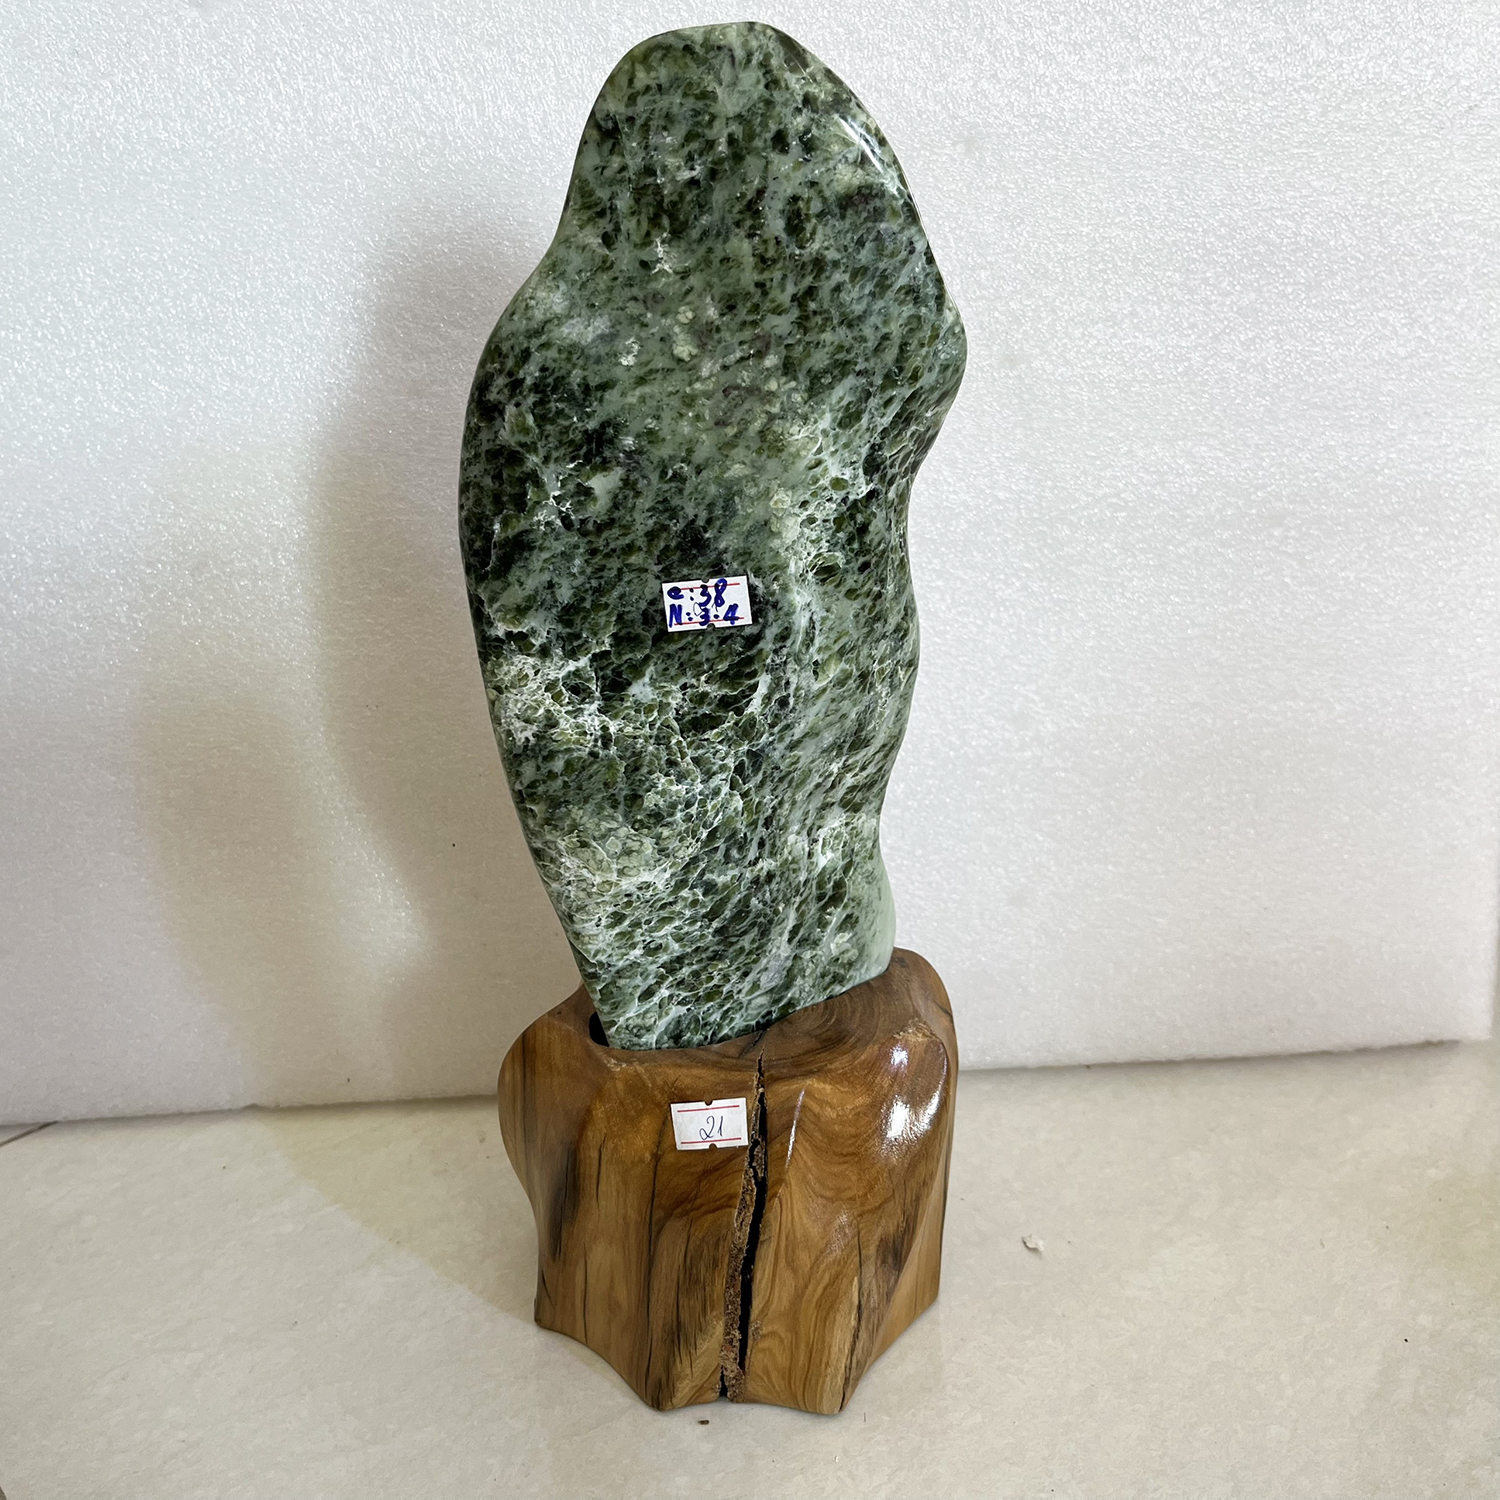 Cây đá phong thủy tự nhiên màu xanh lá cao 32 cm nặng 4 kg cả chân đế gỗ rừng tự nhiên